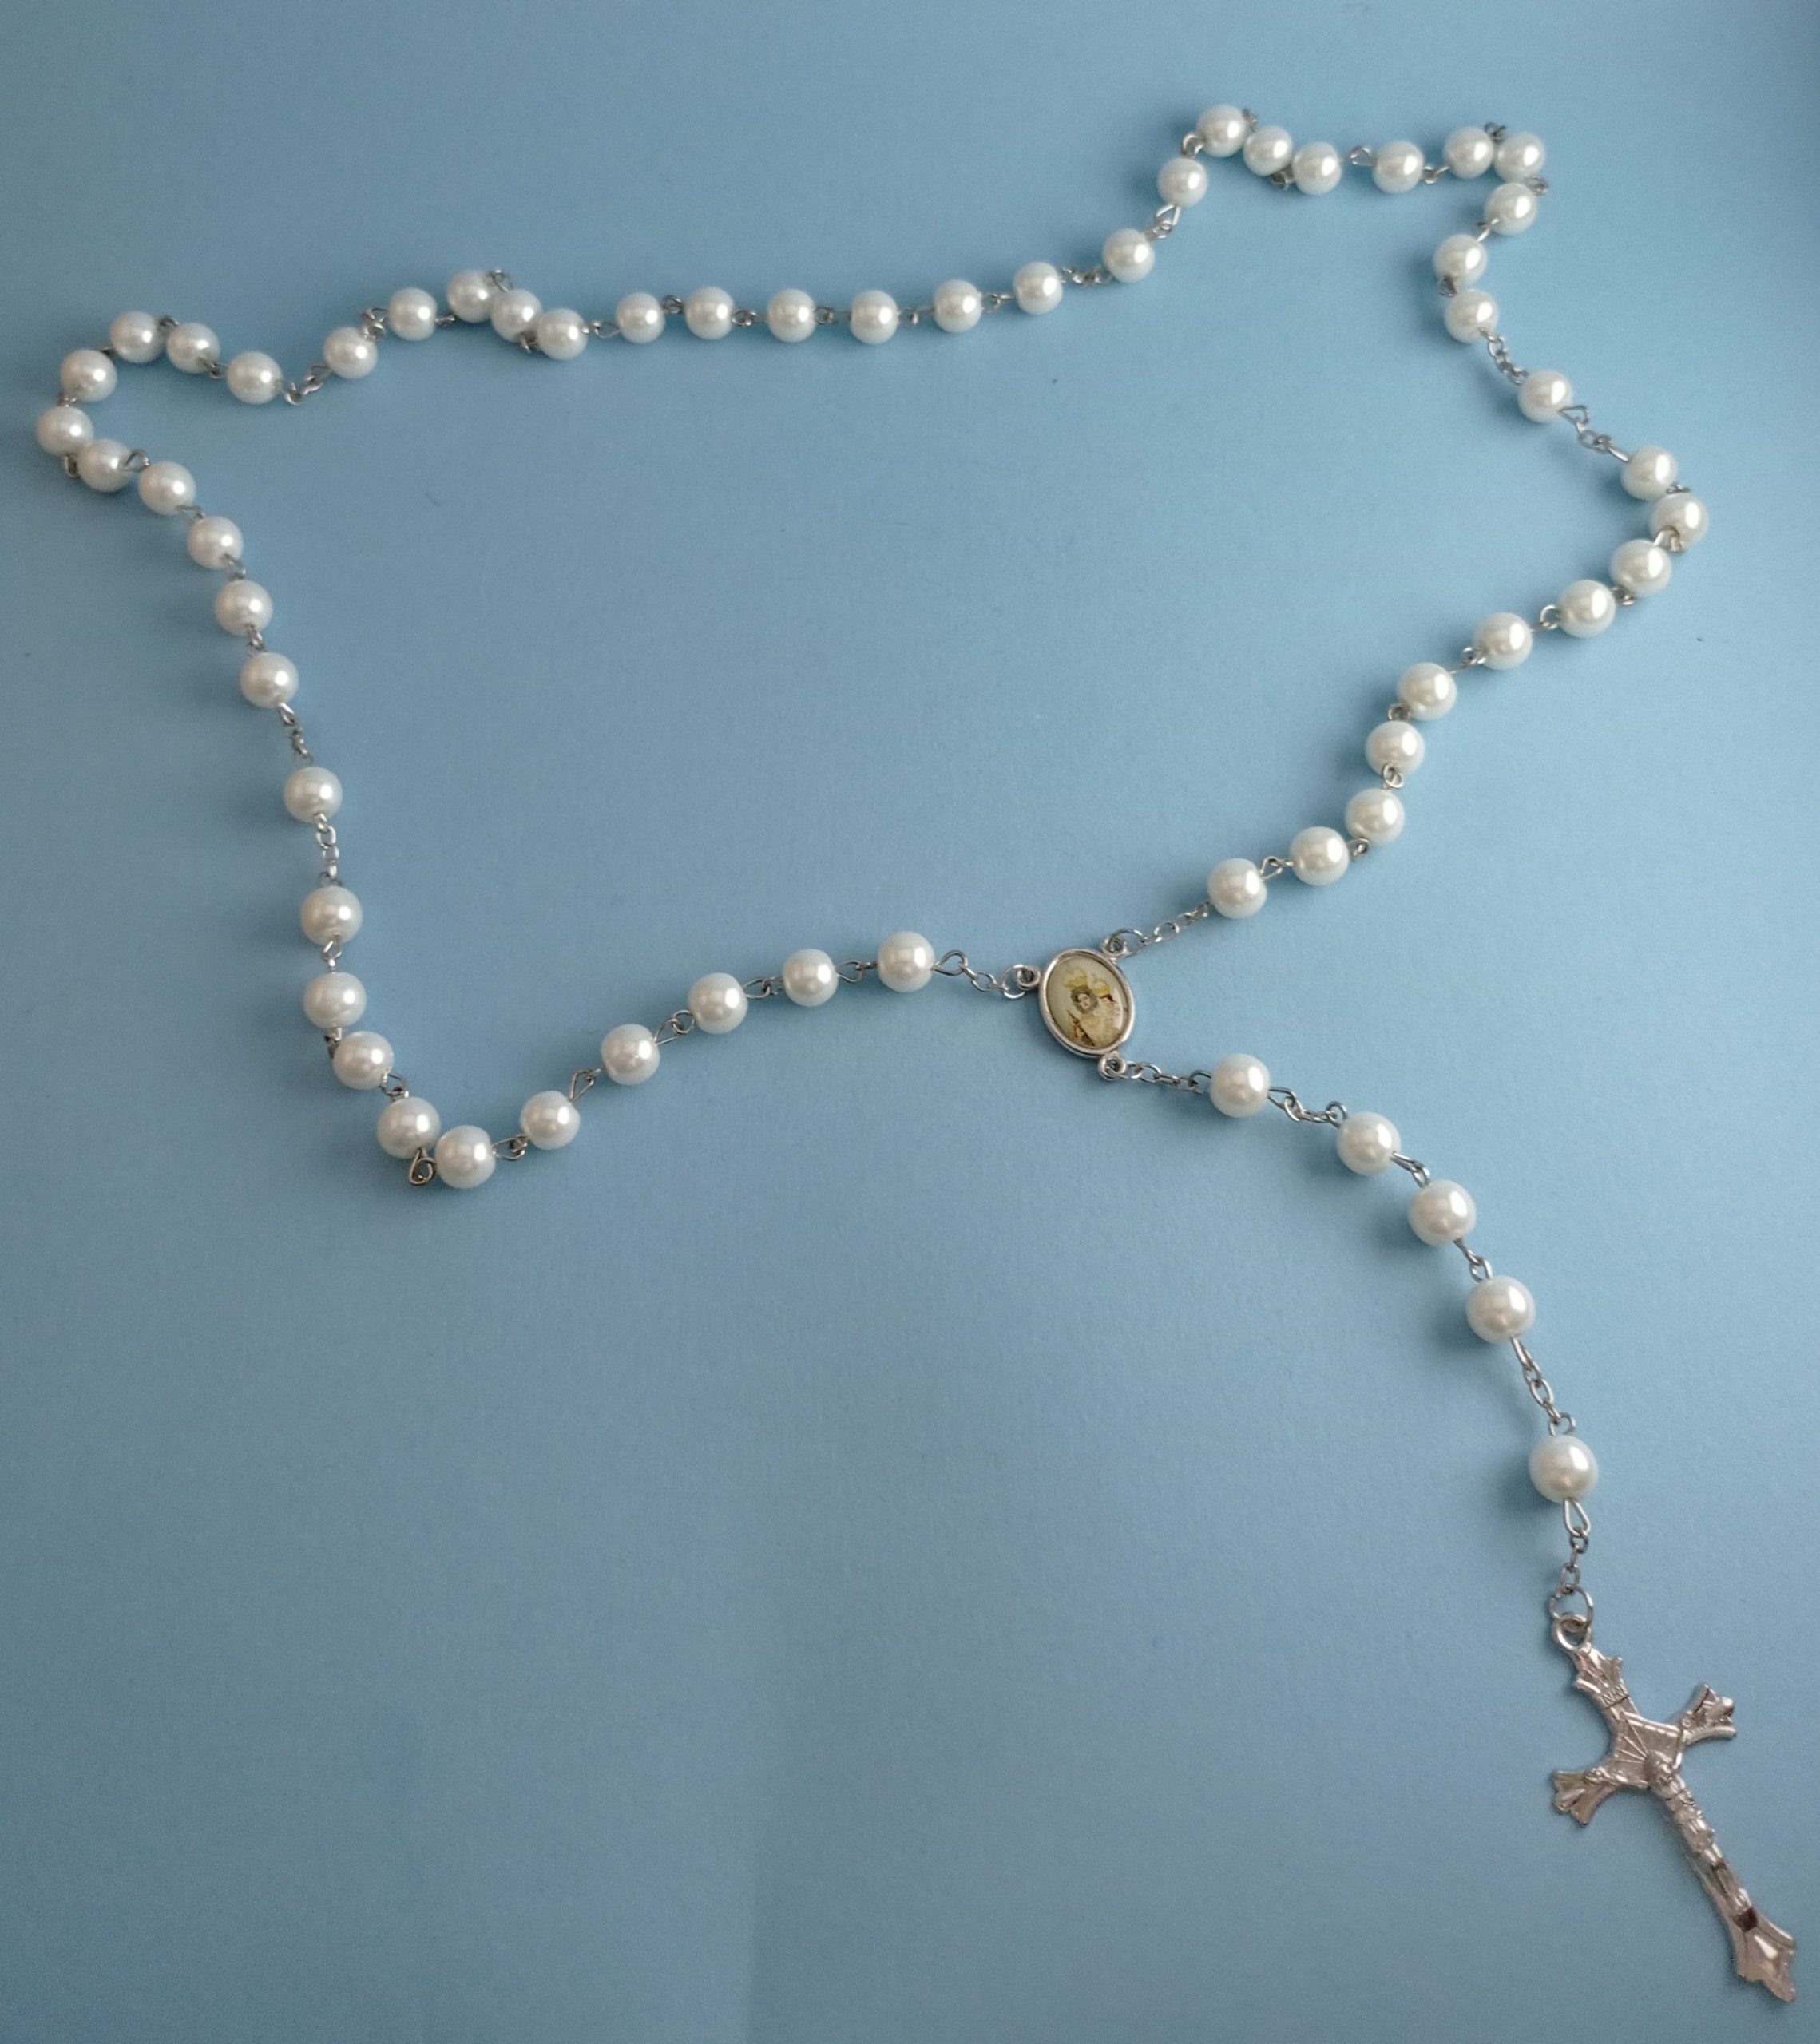 Rebajar Asombro Categoría Rosario de perlas - Archicofradía de la Virgen de Araceli